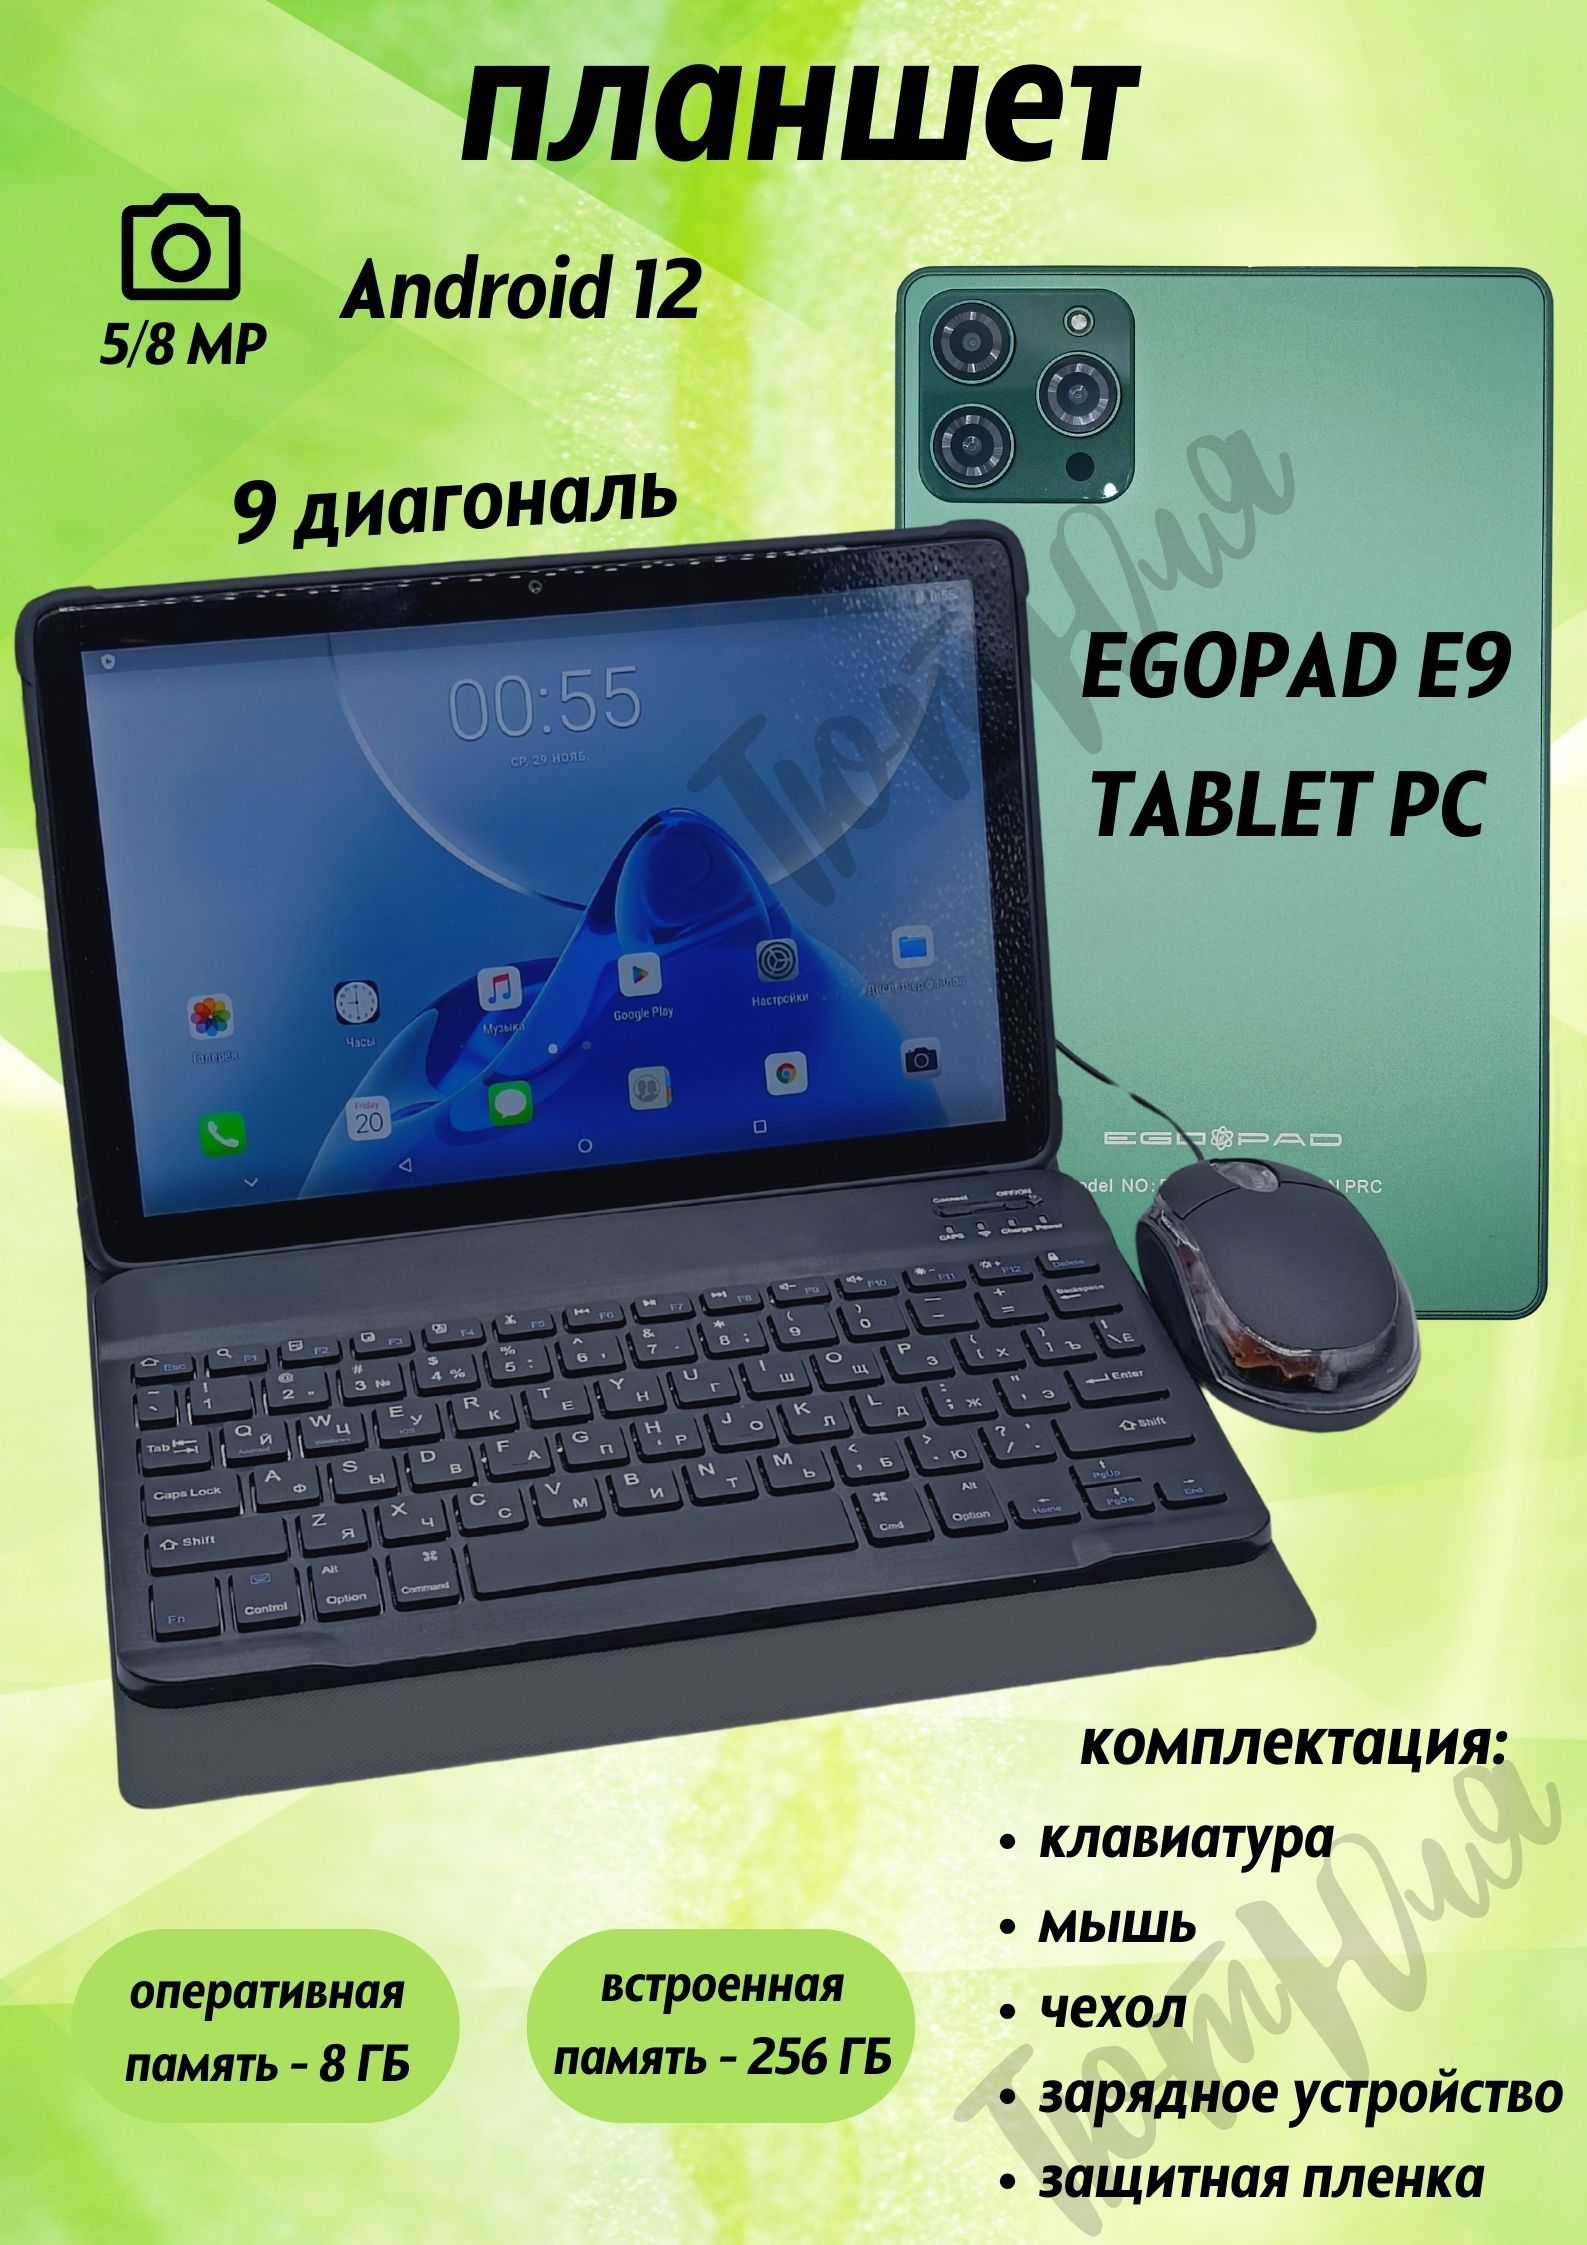 Egopad e8. EGOPAD e9. EGOPAD e8 8/256gb отзывы. EGOPAD s23 8/256. EGOPAD es10 4/128 GB 10.1 дюйм Android 13 серебро обзоры.